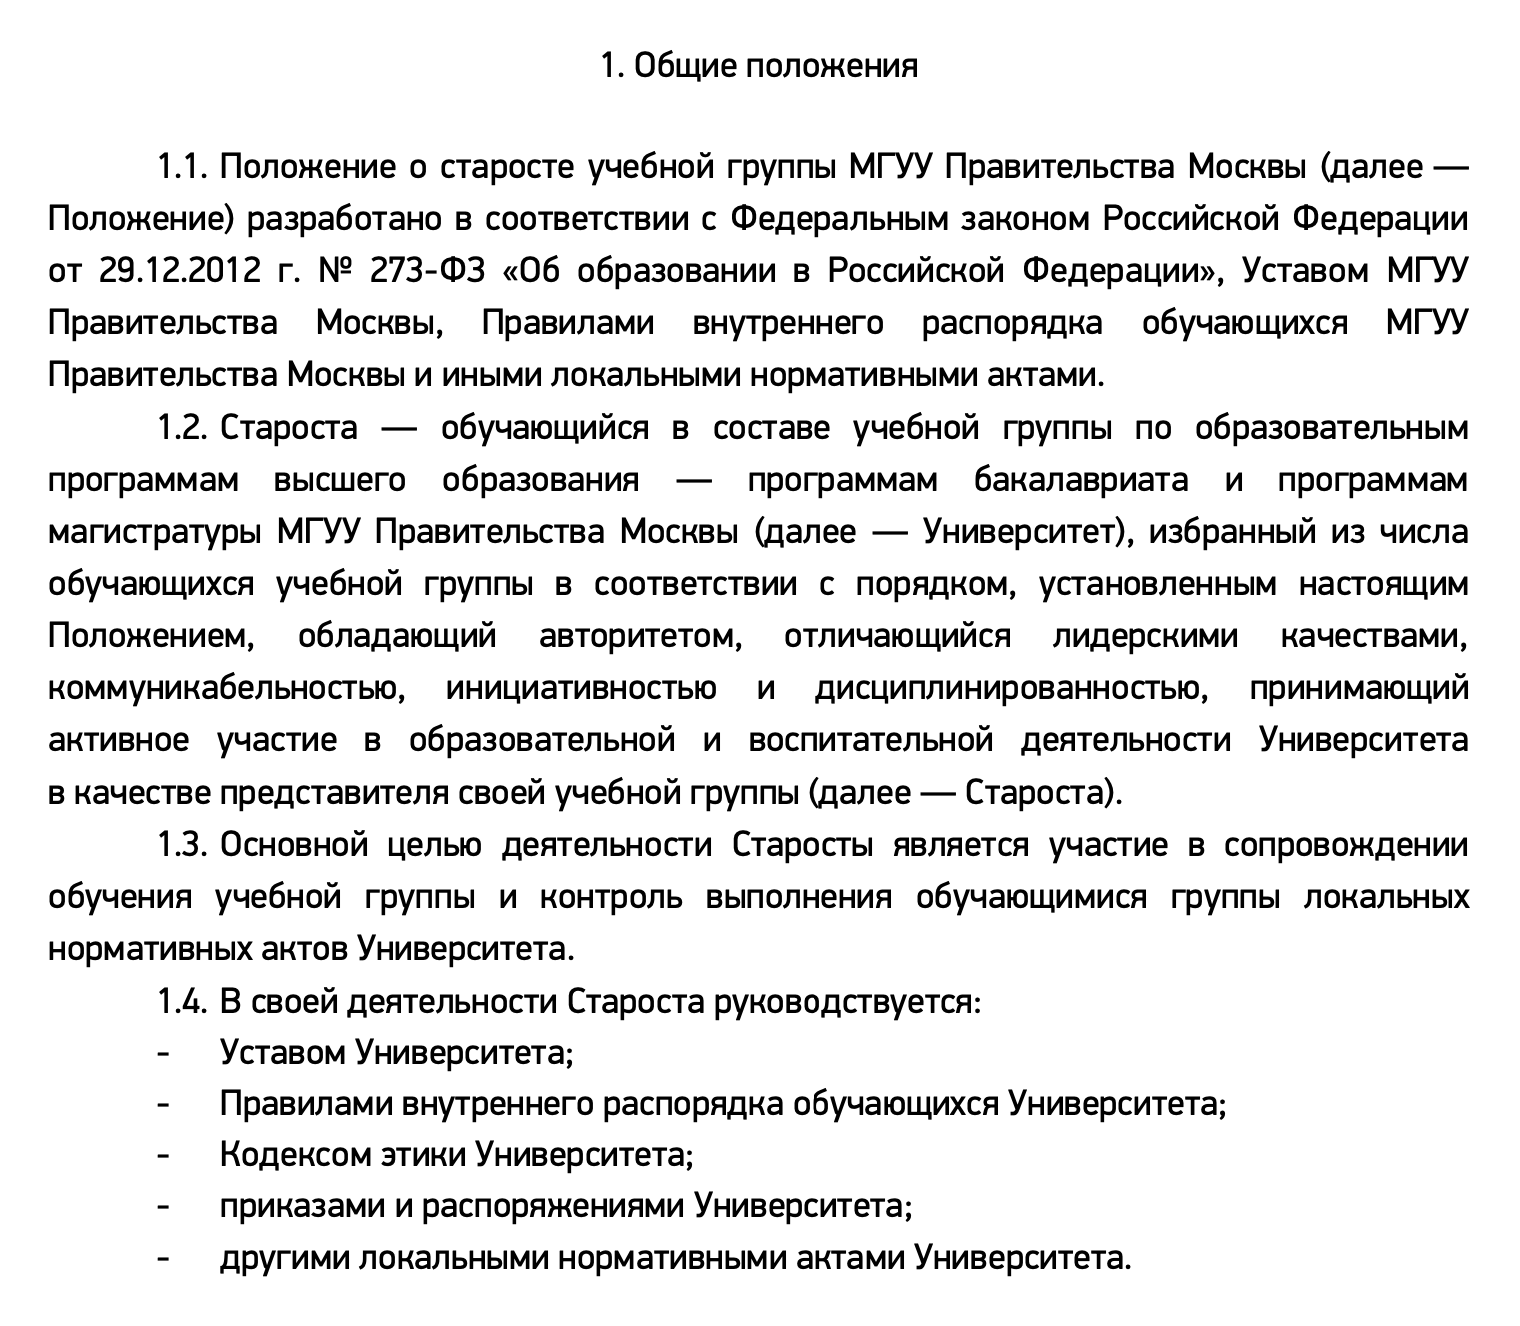 А так описывают статус и задачи старосты в МГУУ Правительства Москвы. Источник: mguu.ru